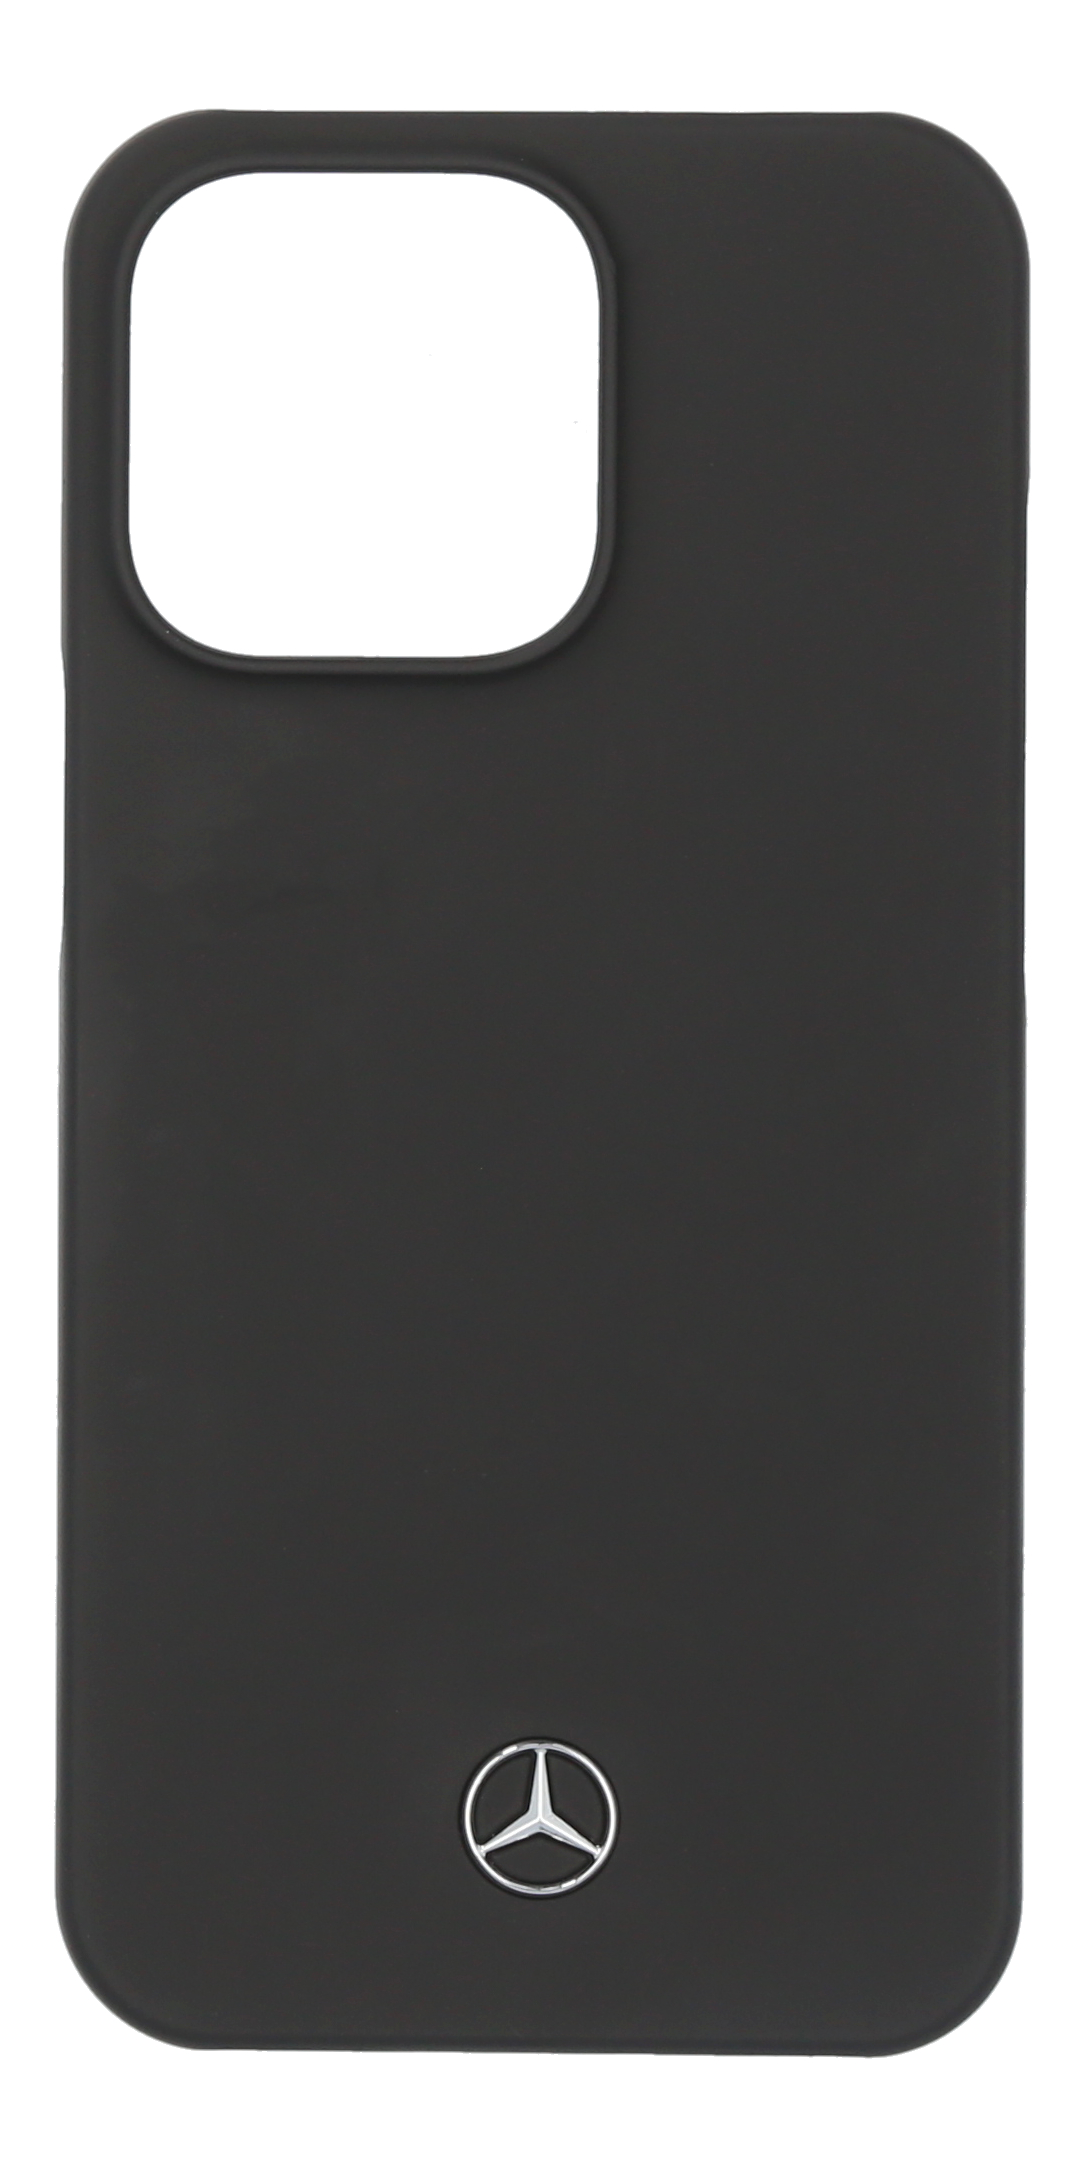 Hülle für iPhone® 13 Pro - schwarz, Polycarbonat / Mikrofaser